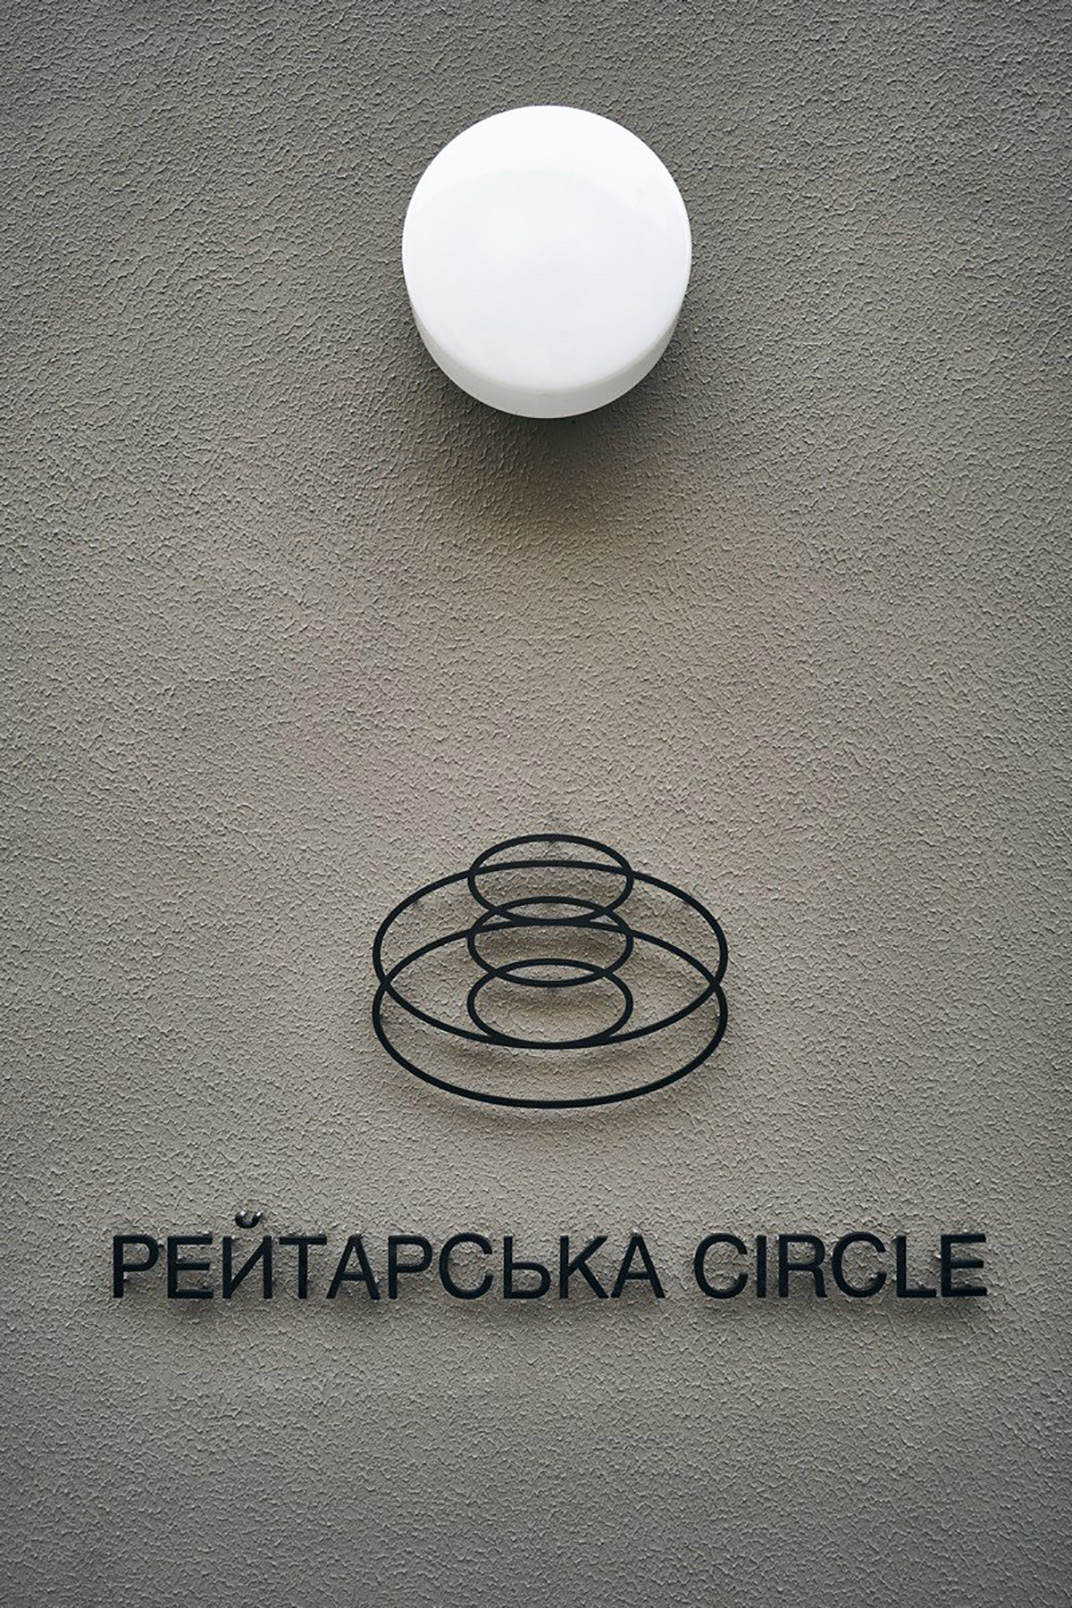 居民区里的圆形建筑餐厅Reitarska Circle 乌克兰 成都 社区 圆形 居民区 logo设计 vi设计 空间设计